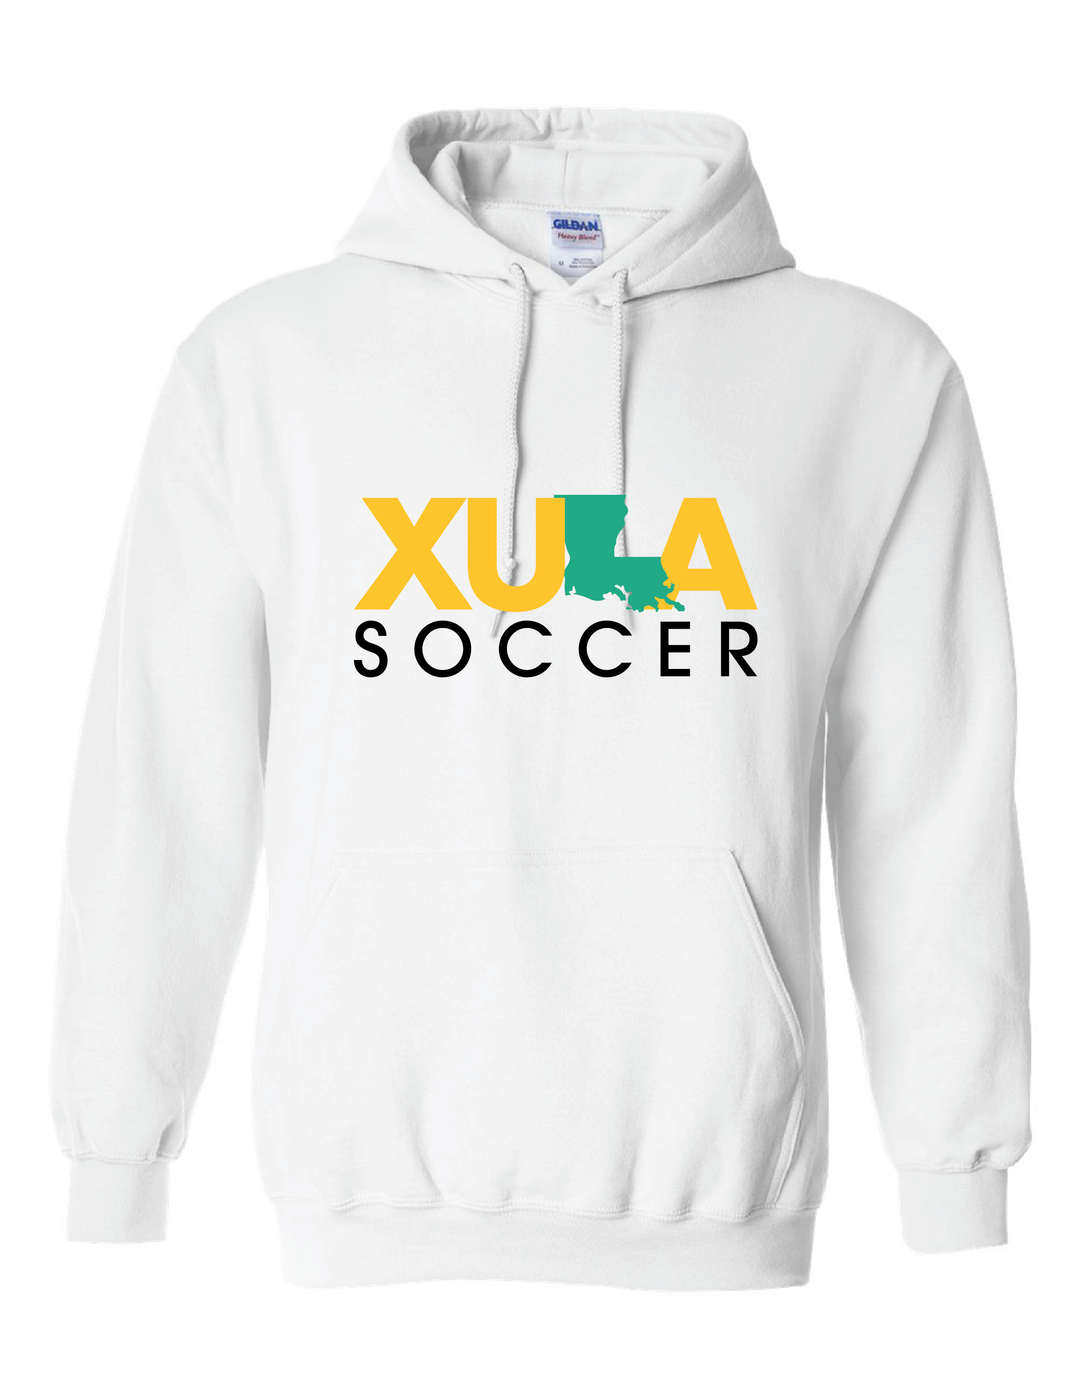 XULA Soccer Hoody Xavier University White Mens Small - Third Coast Soccer